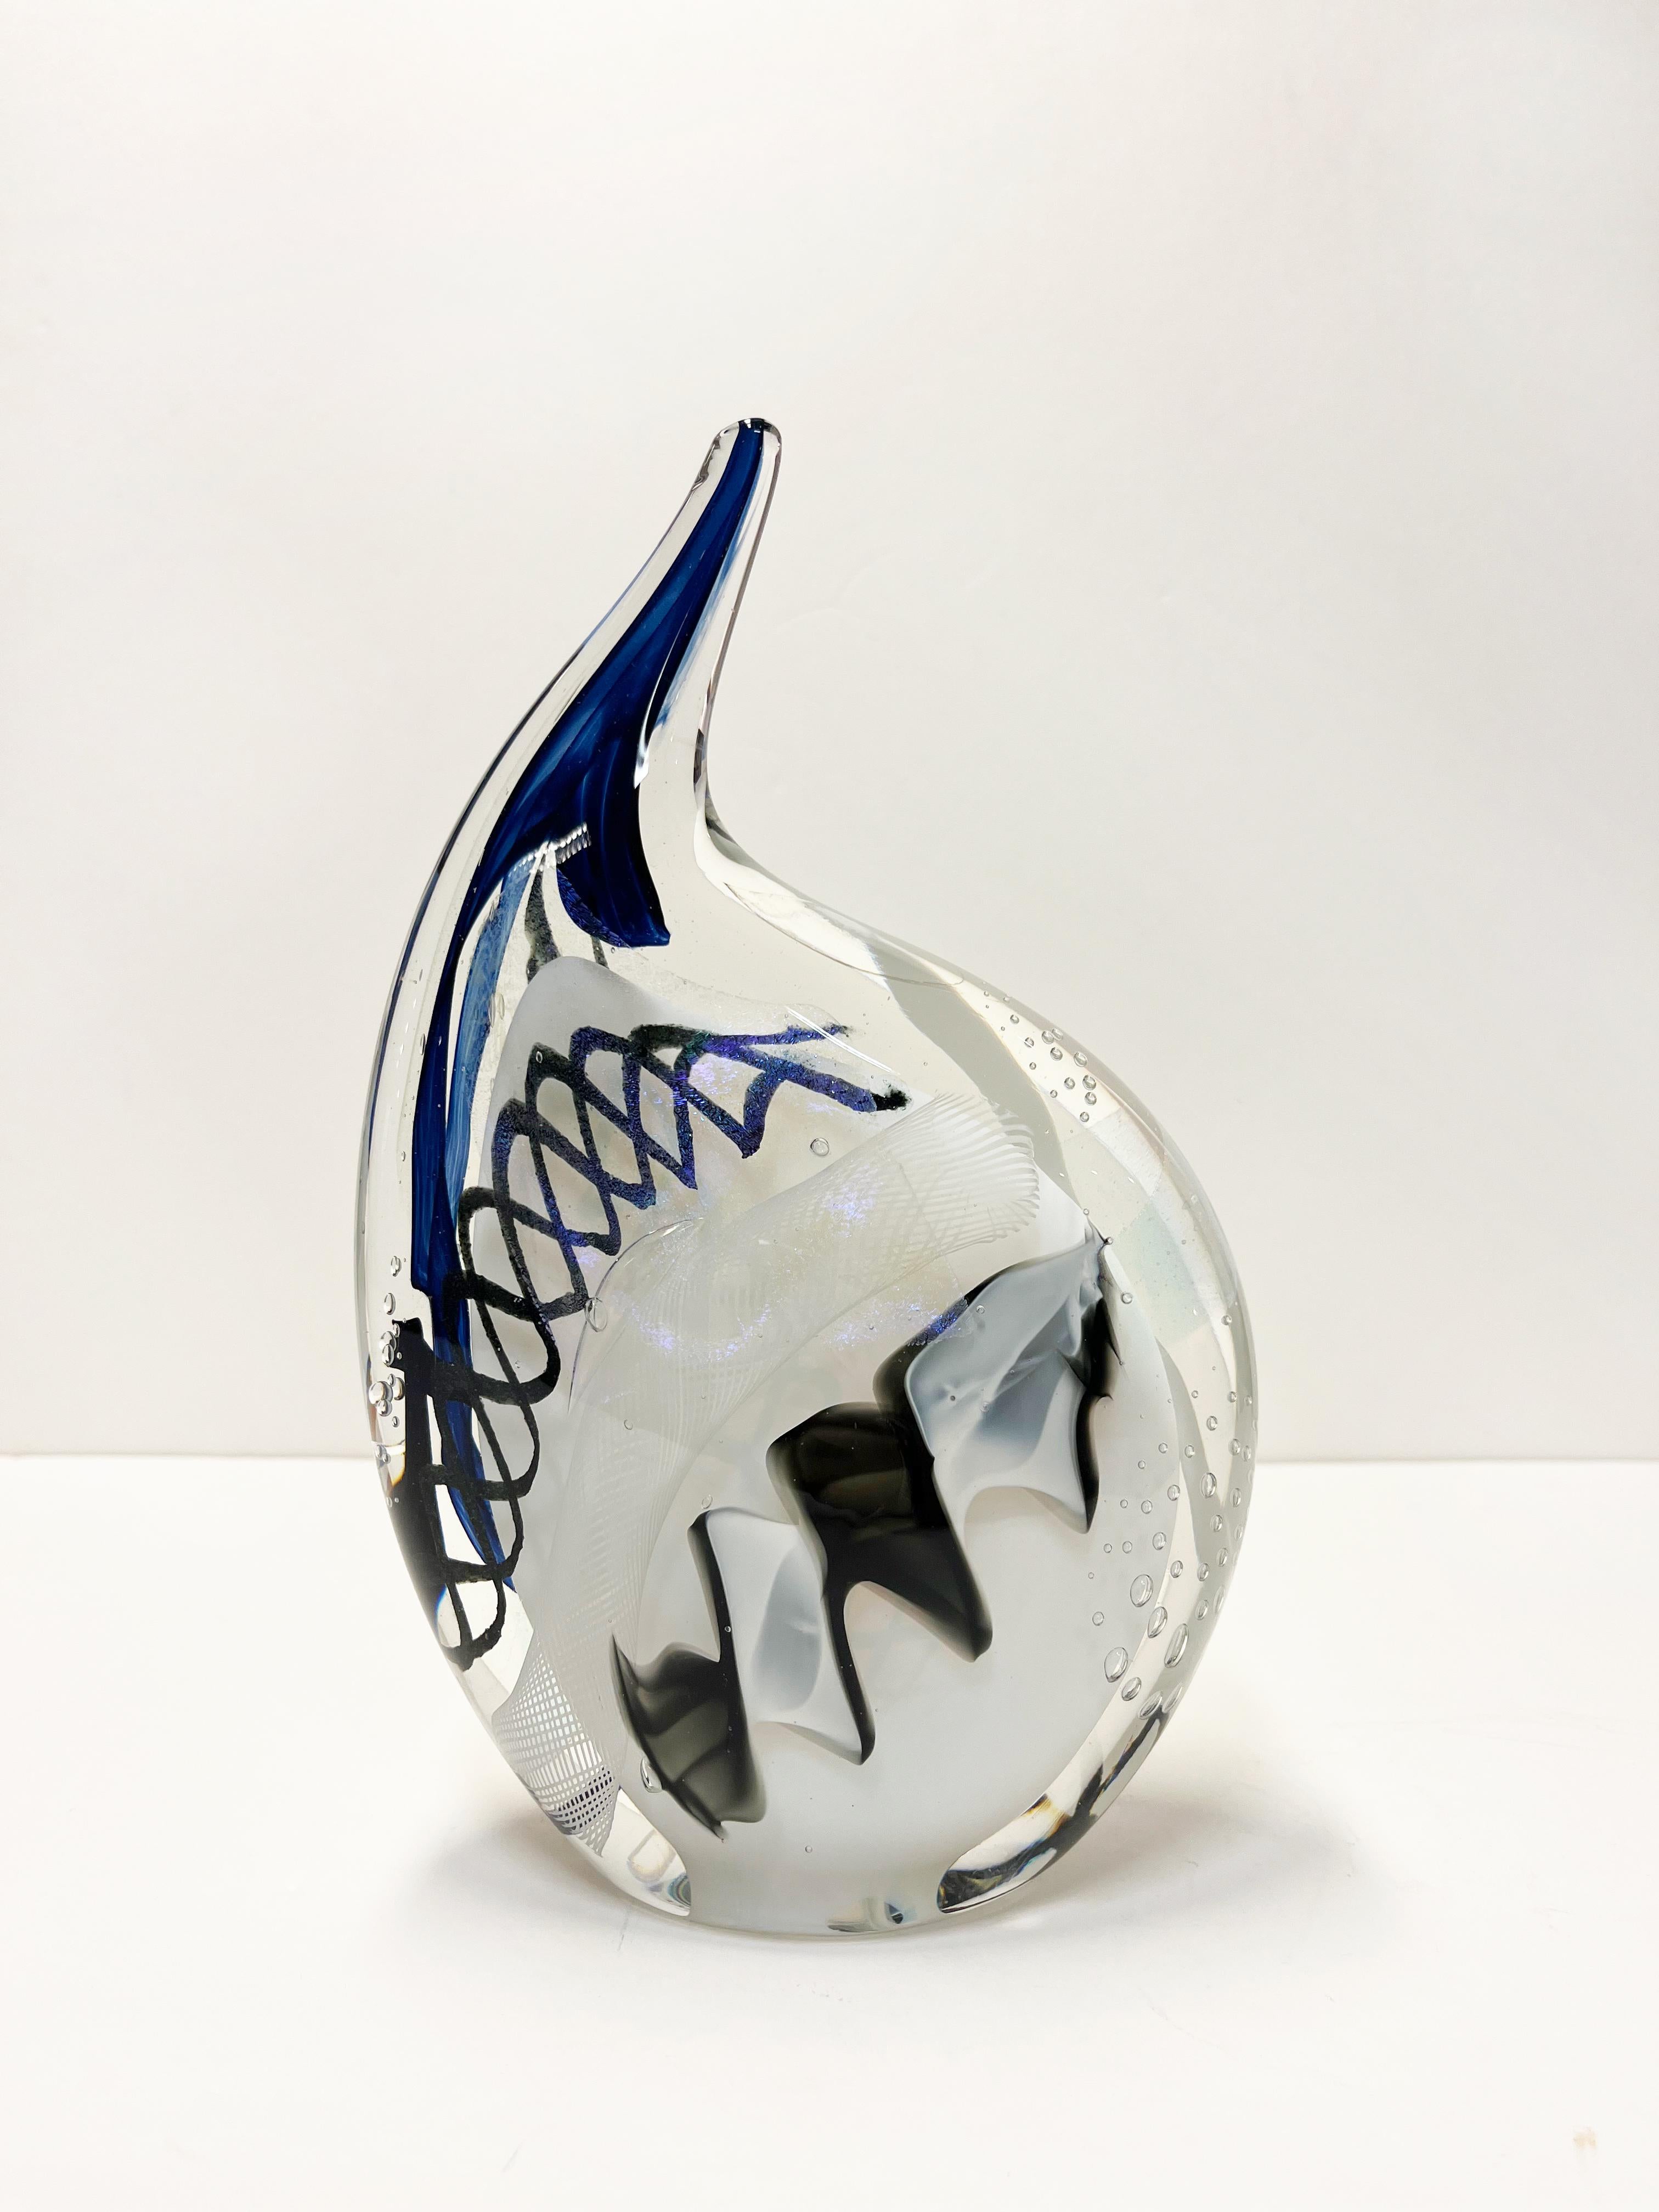 White & black "Rhino" sculptural glass decorative object - Art by Alyssa Getz & Tom Cudmore